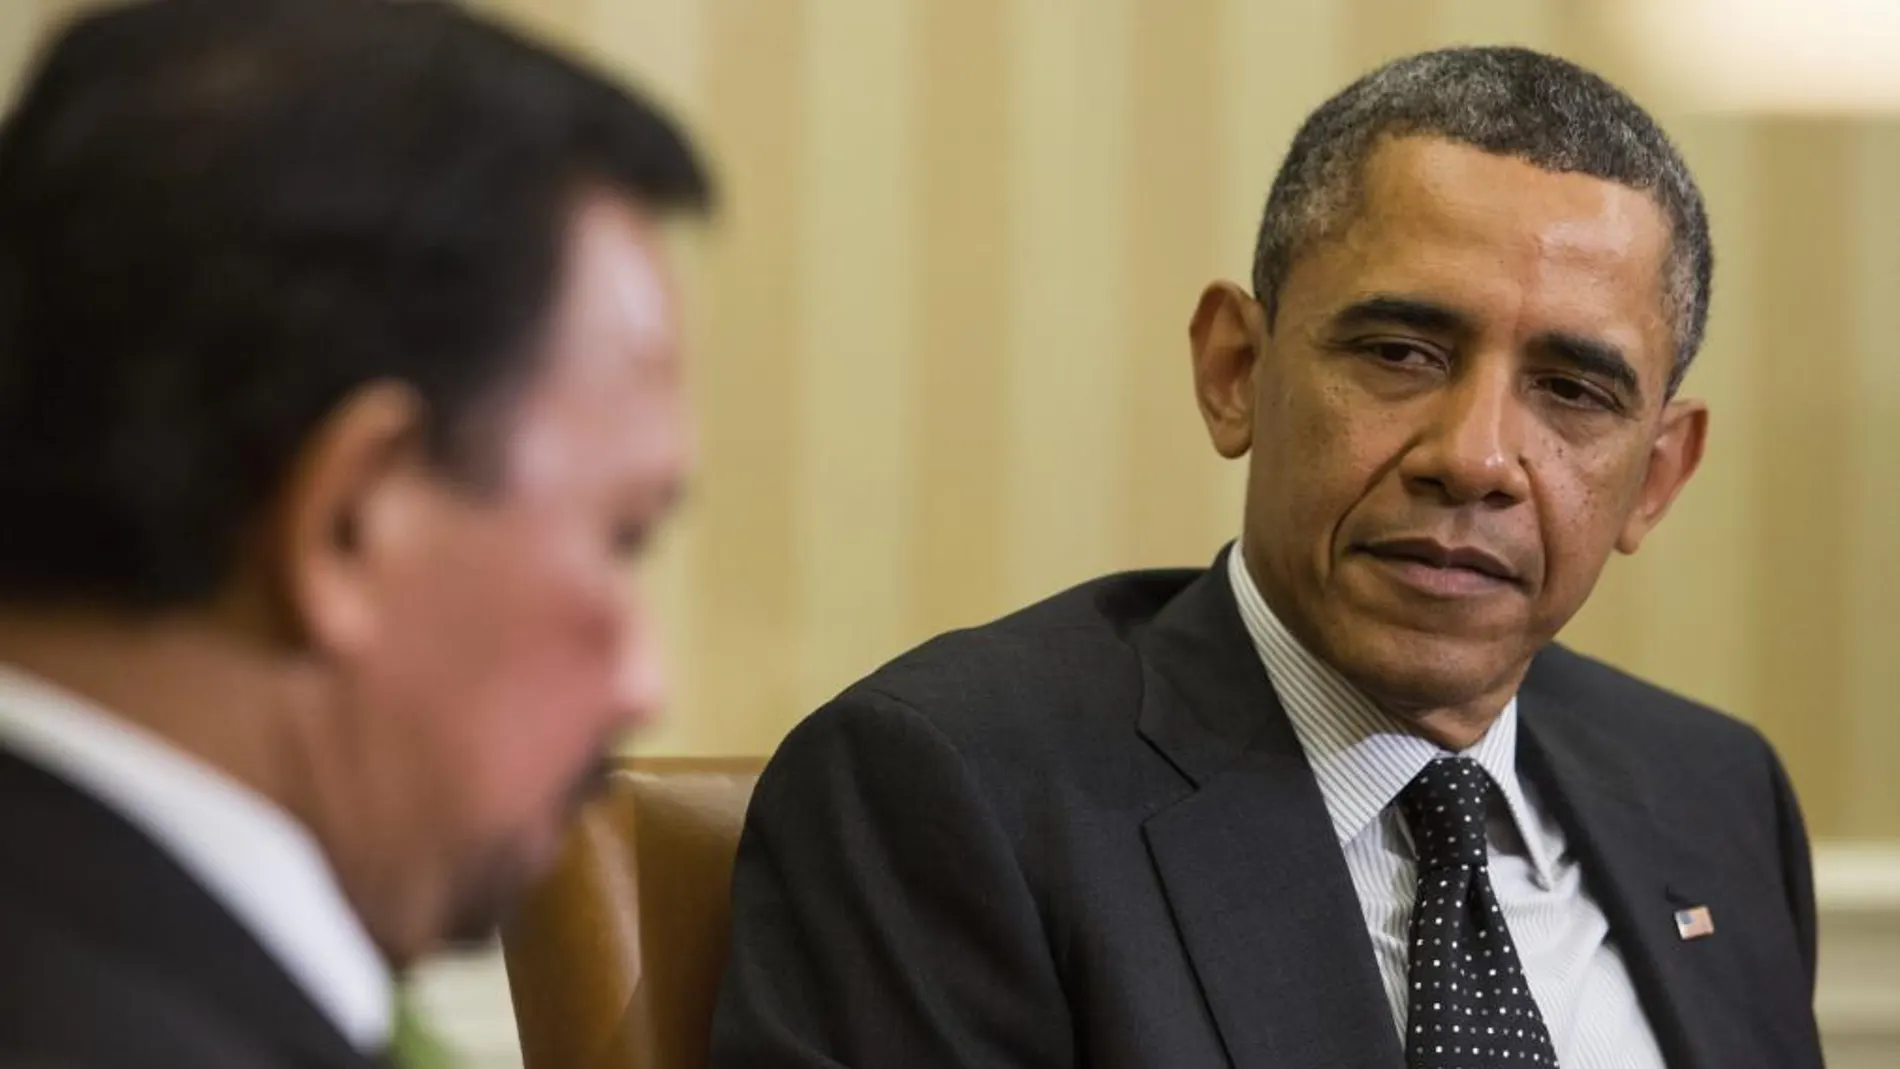 El presidente Barack Obama durante una reunión celebrada en la Casa Blanca en Washington, Estados Unidos hoy 12 de marzo de 2013.